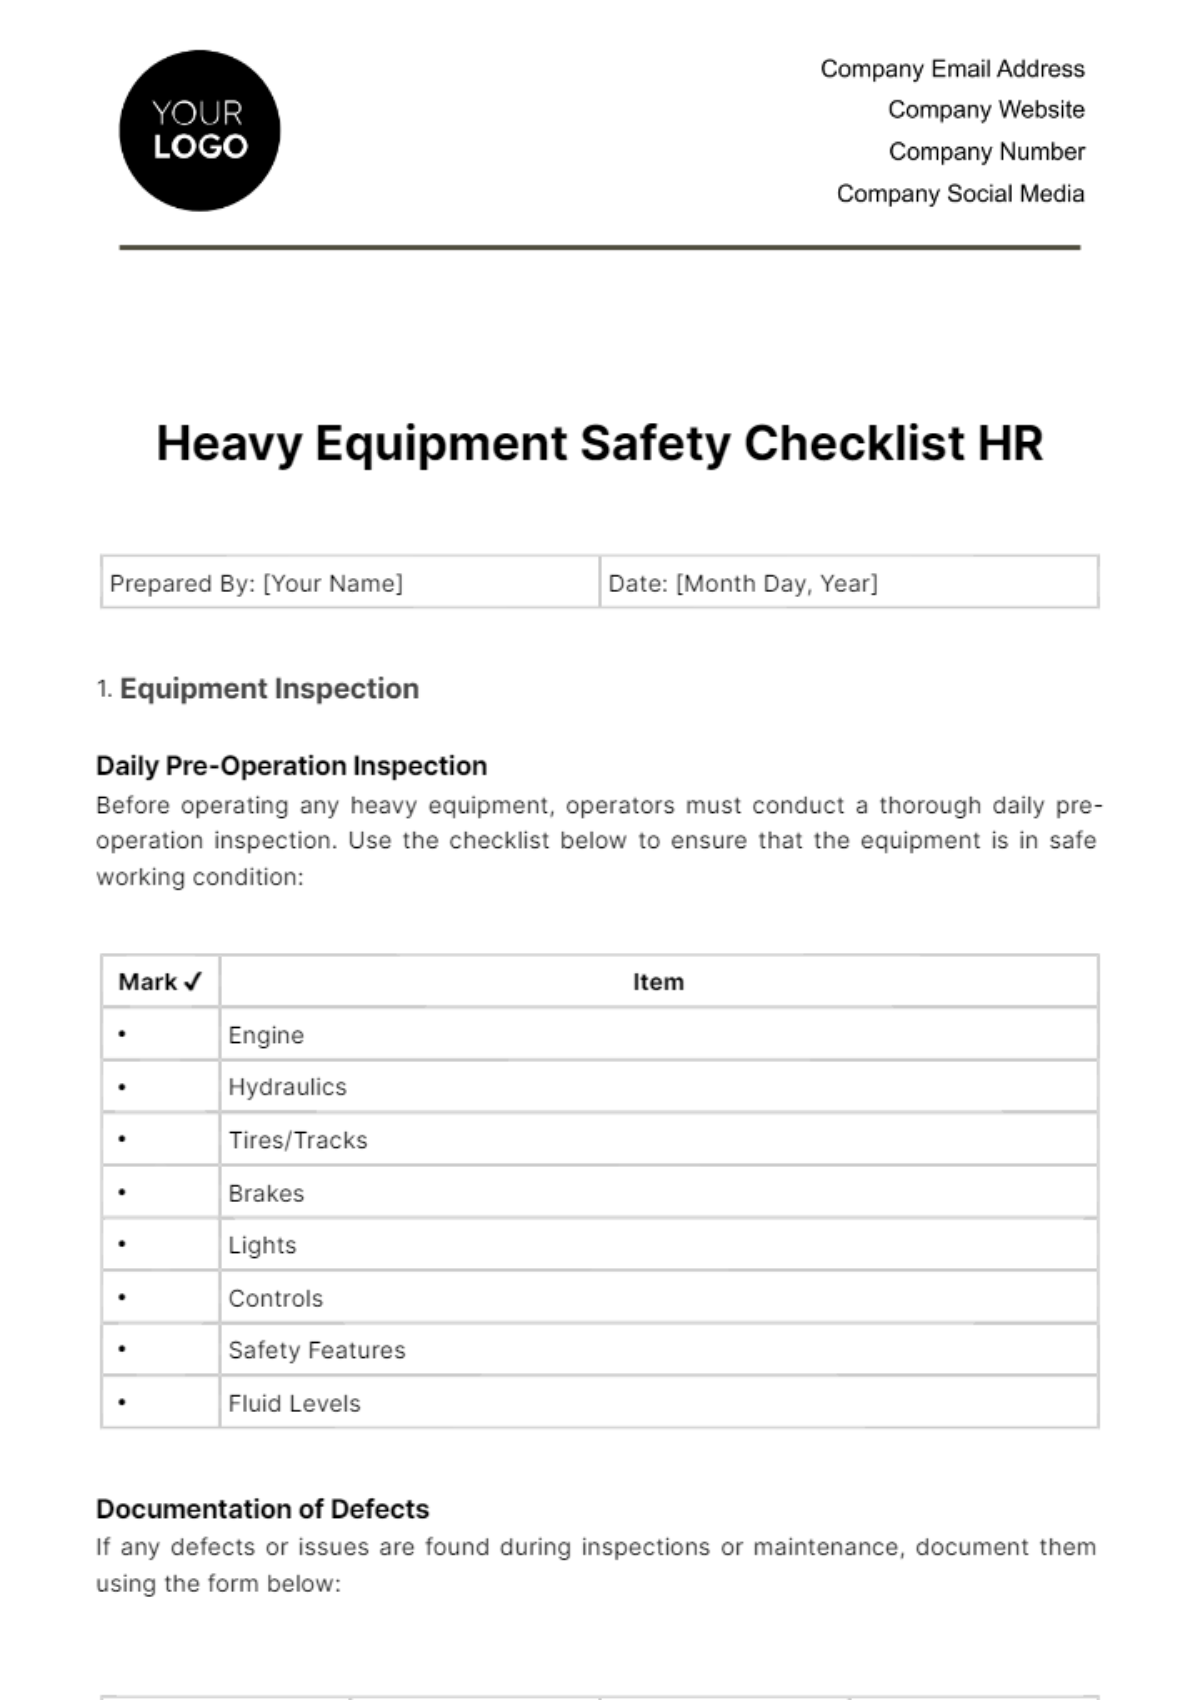 Free Heavy Equipment Safety Checklist HR Template